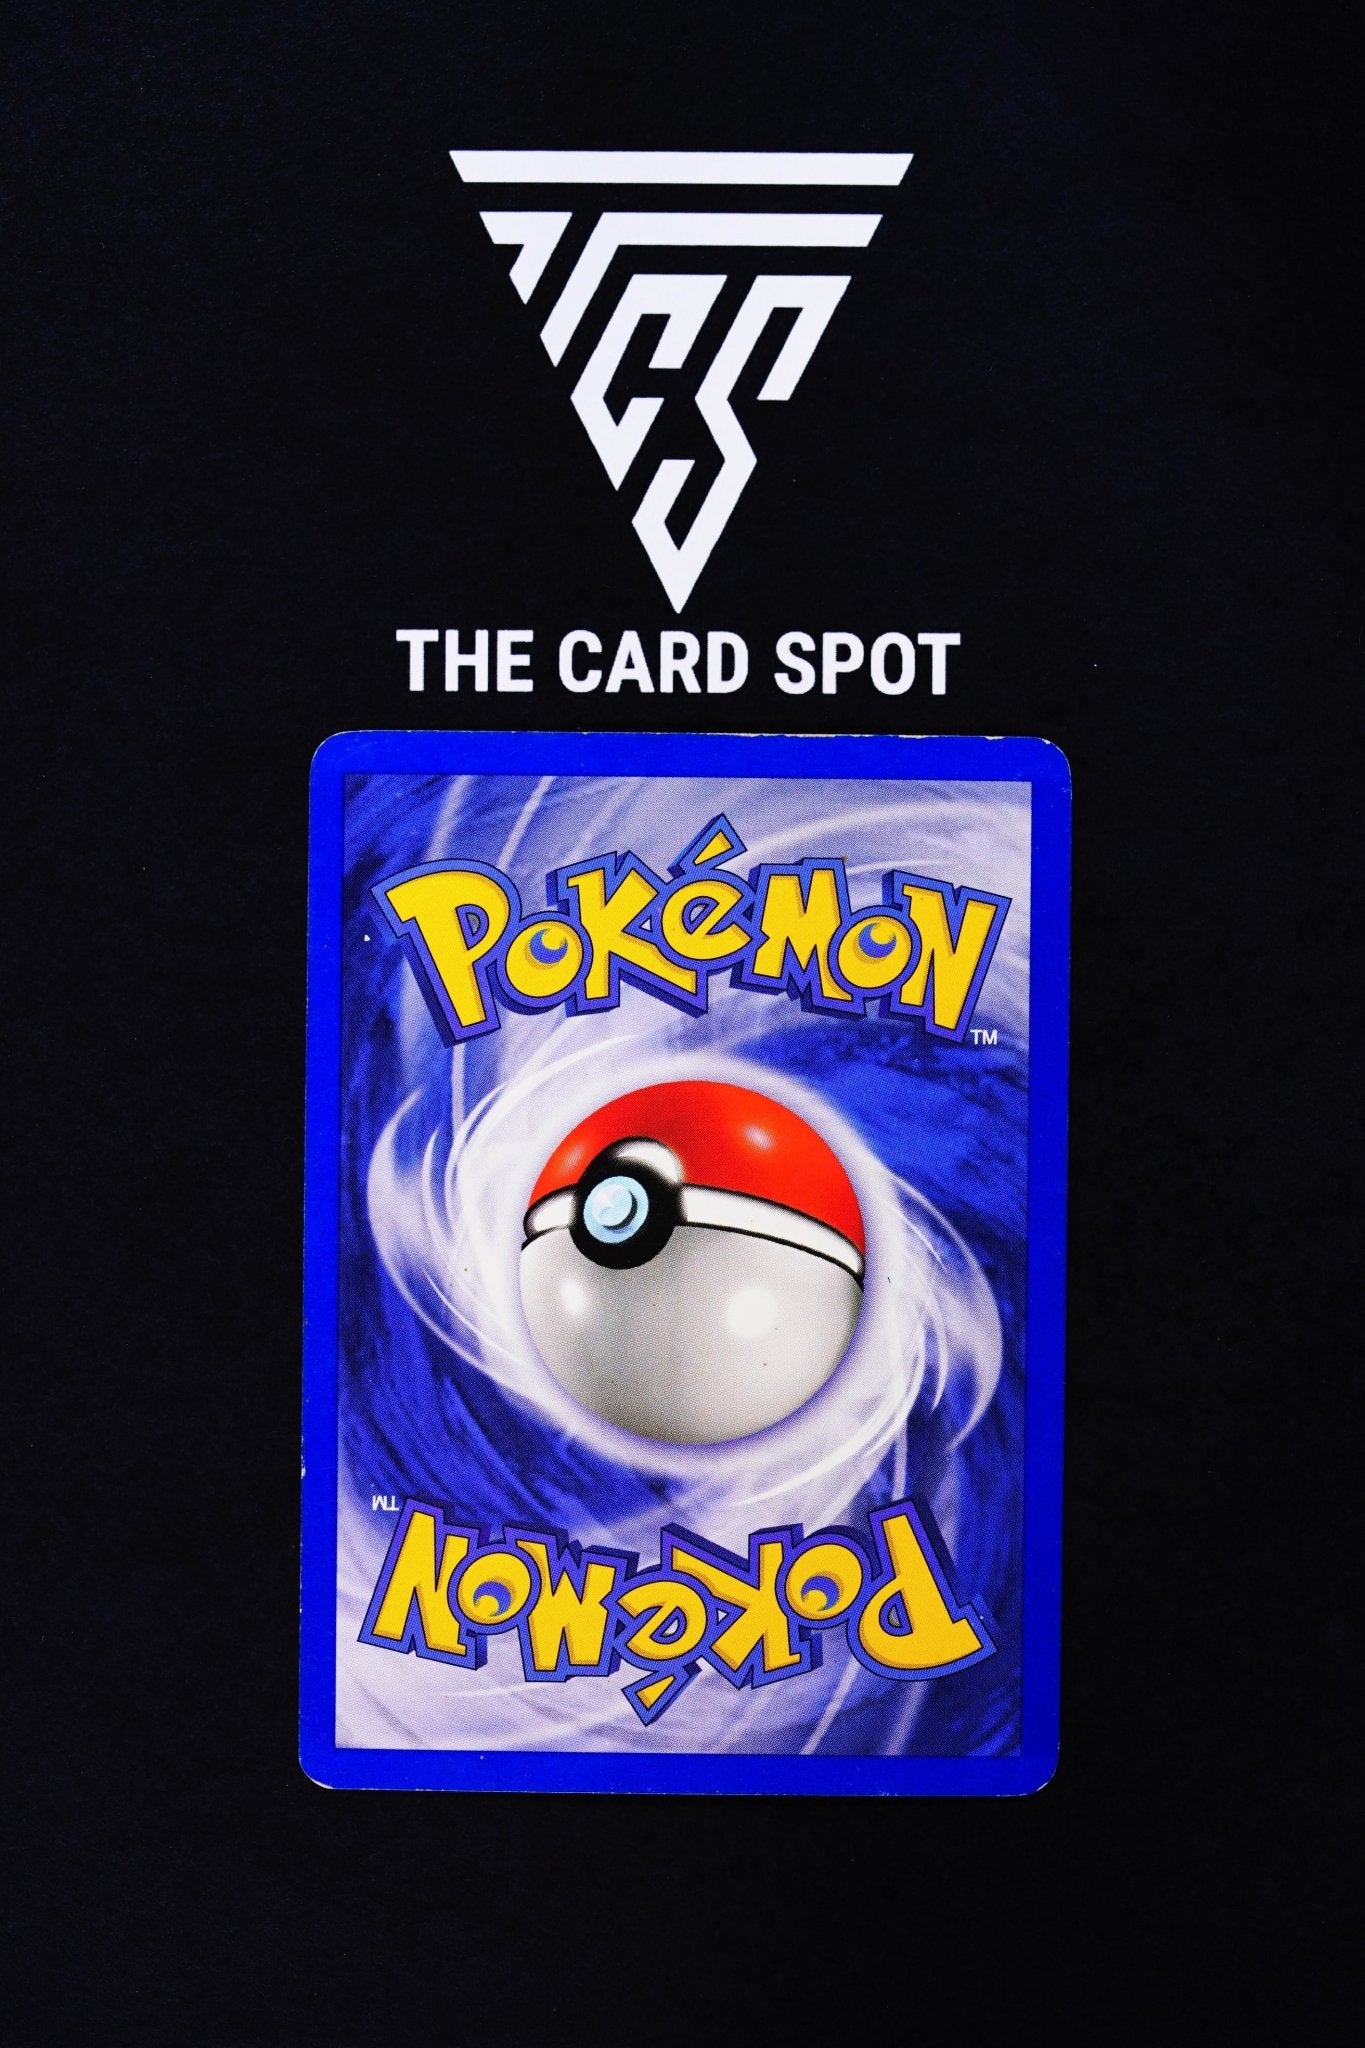 Electrode 2/64 - Jungle - Pokemon Card For Sale - THE CARD SPOT PTY LTD.Pokemon Raw CardsPokémon